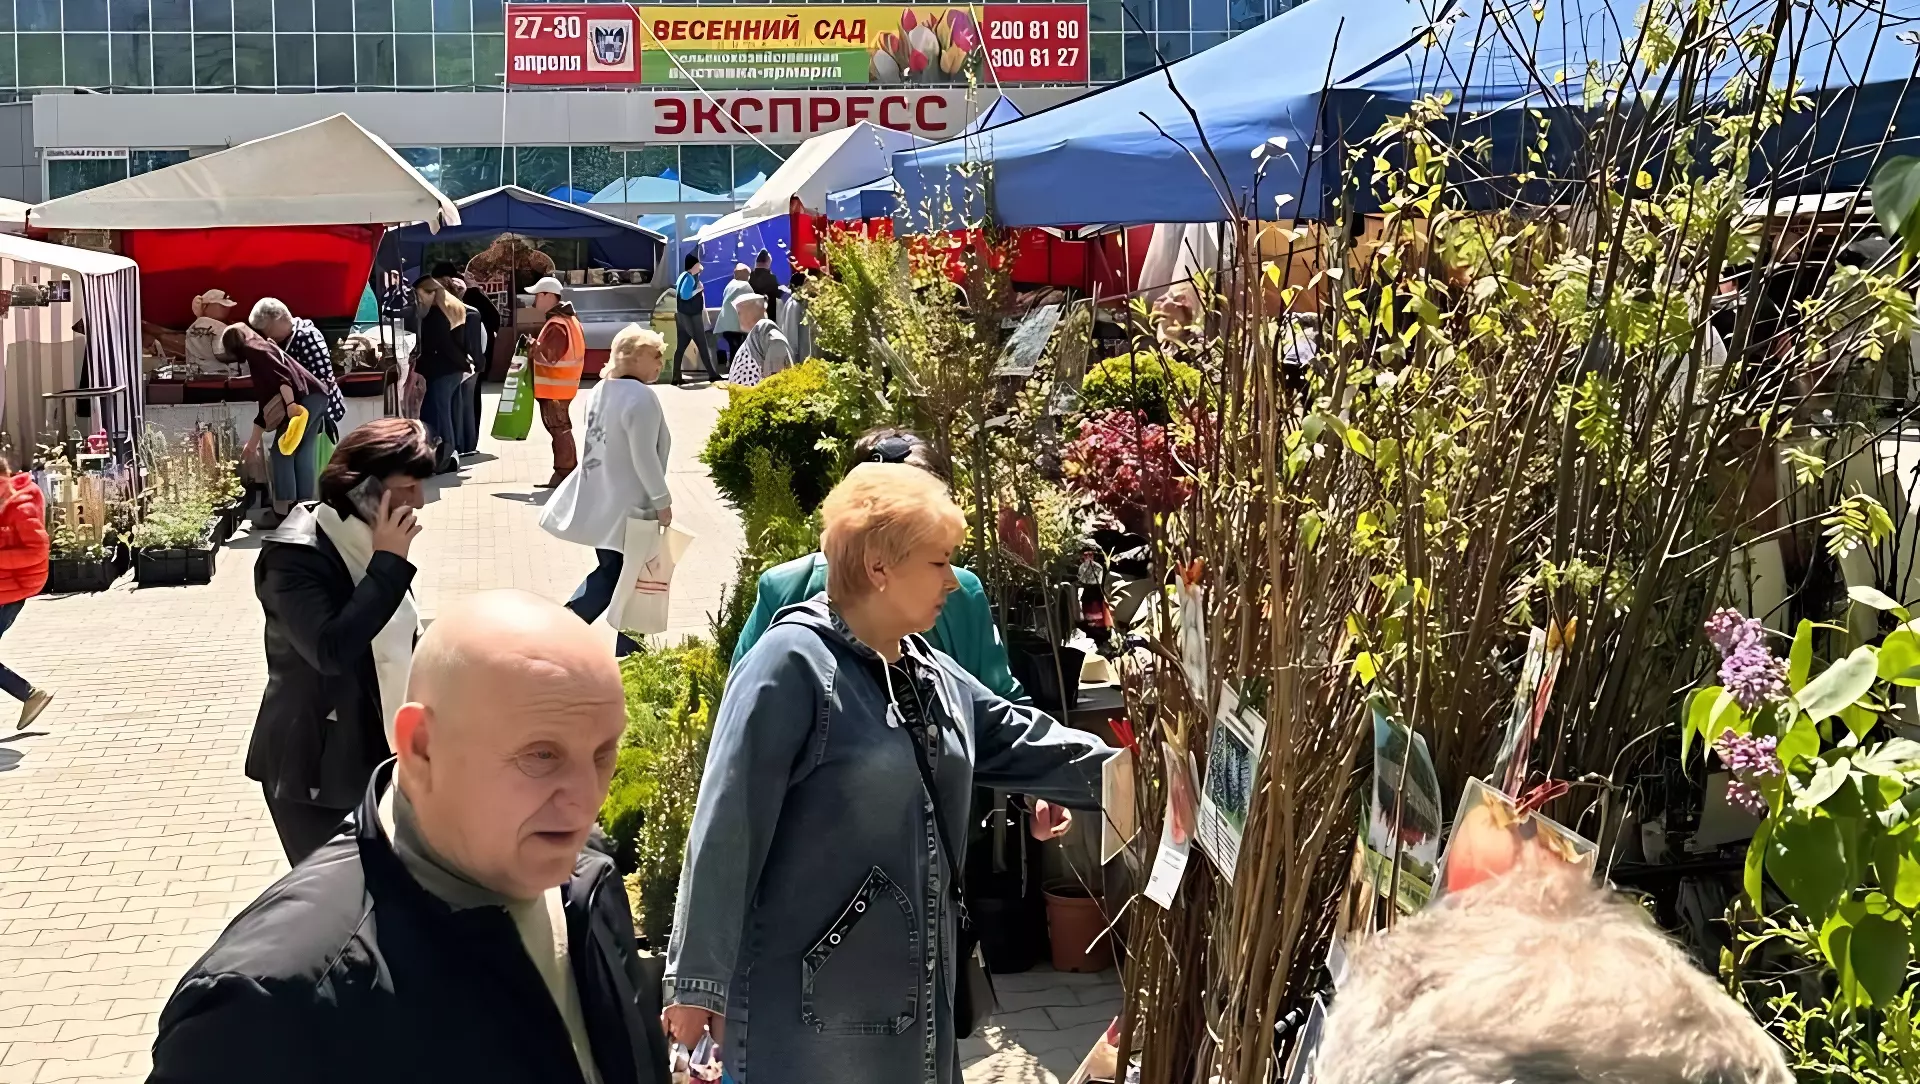 Цветущий «Весенний сад» в Ростове-на-Дону очарует с первого взгляда